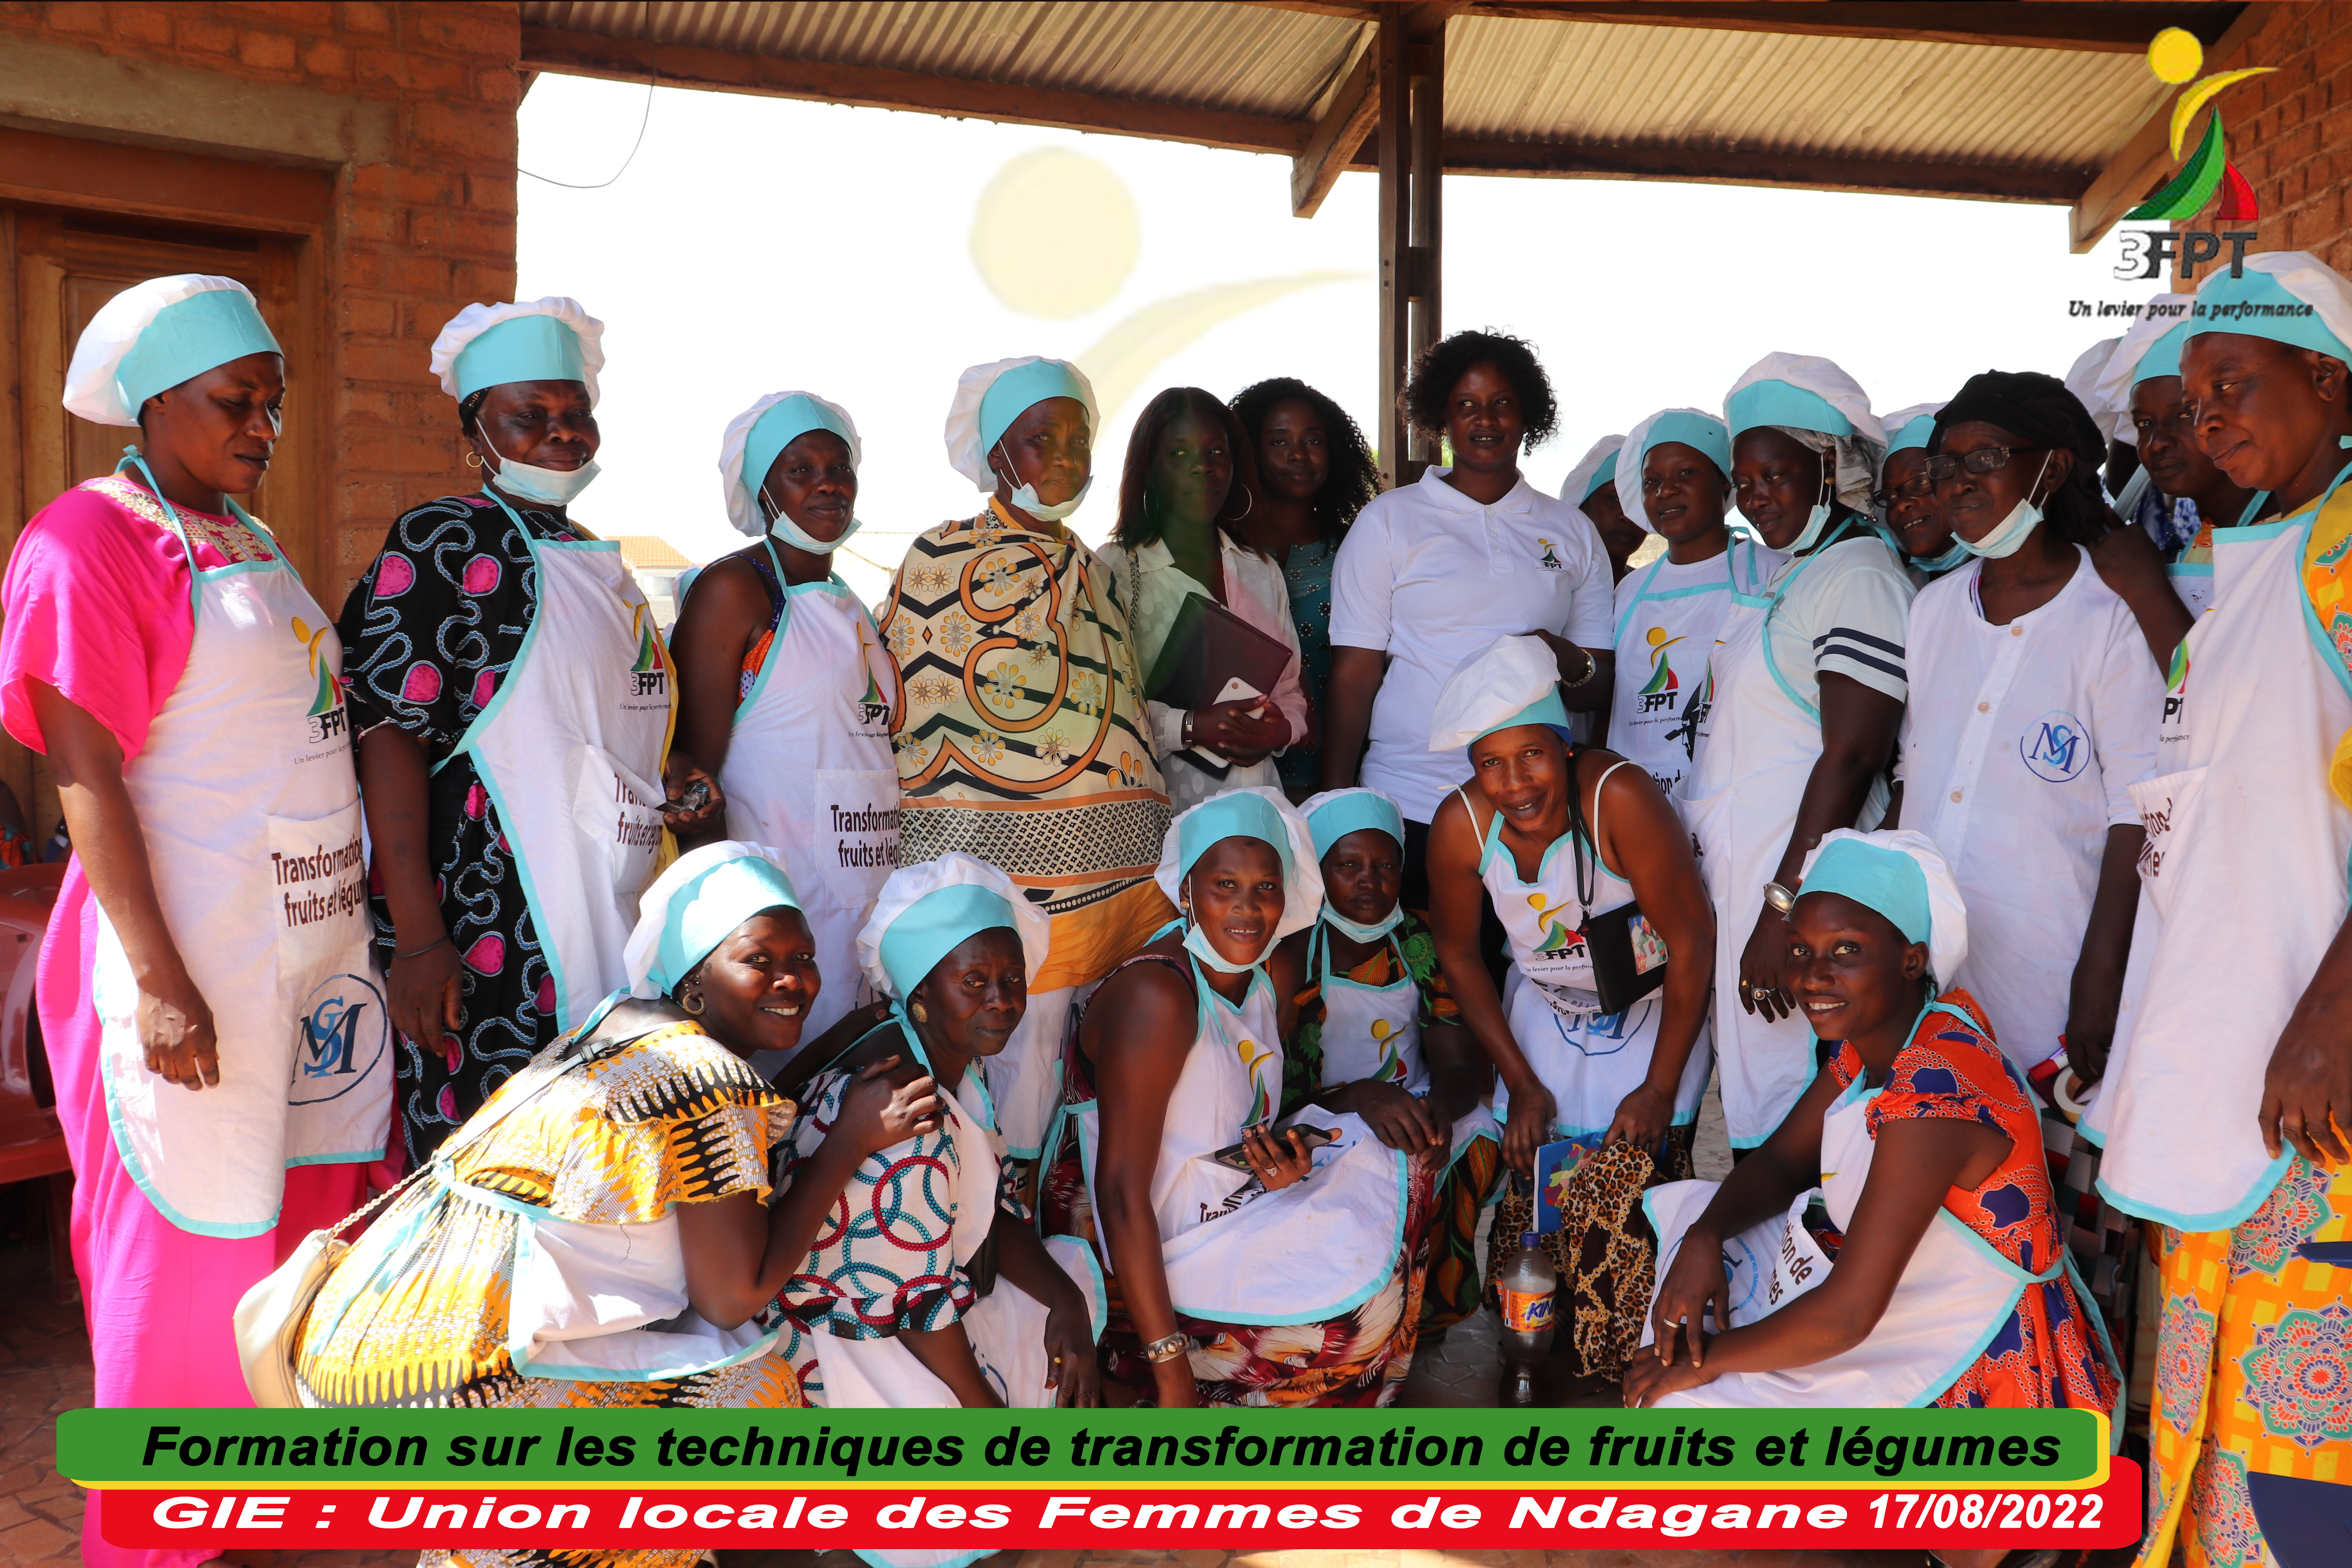 GIE Union Locale des femmes de Ndangane Sambou